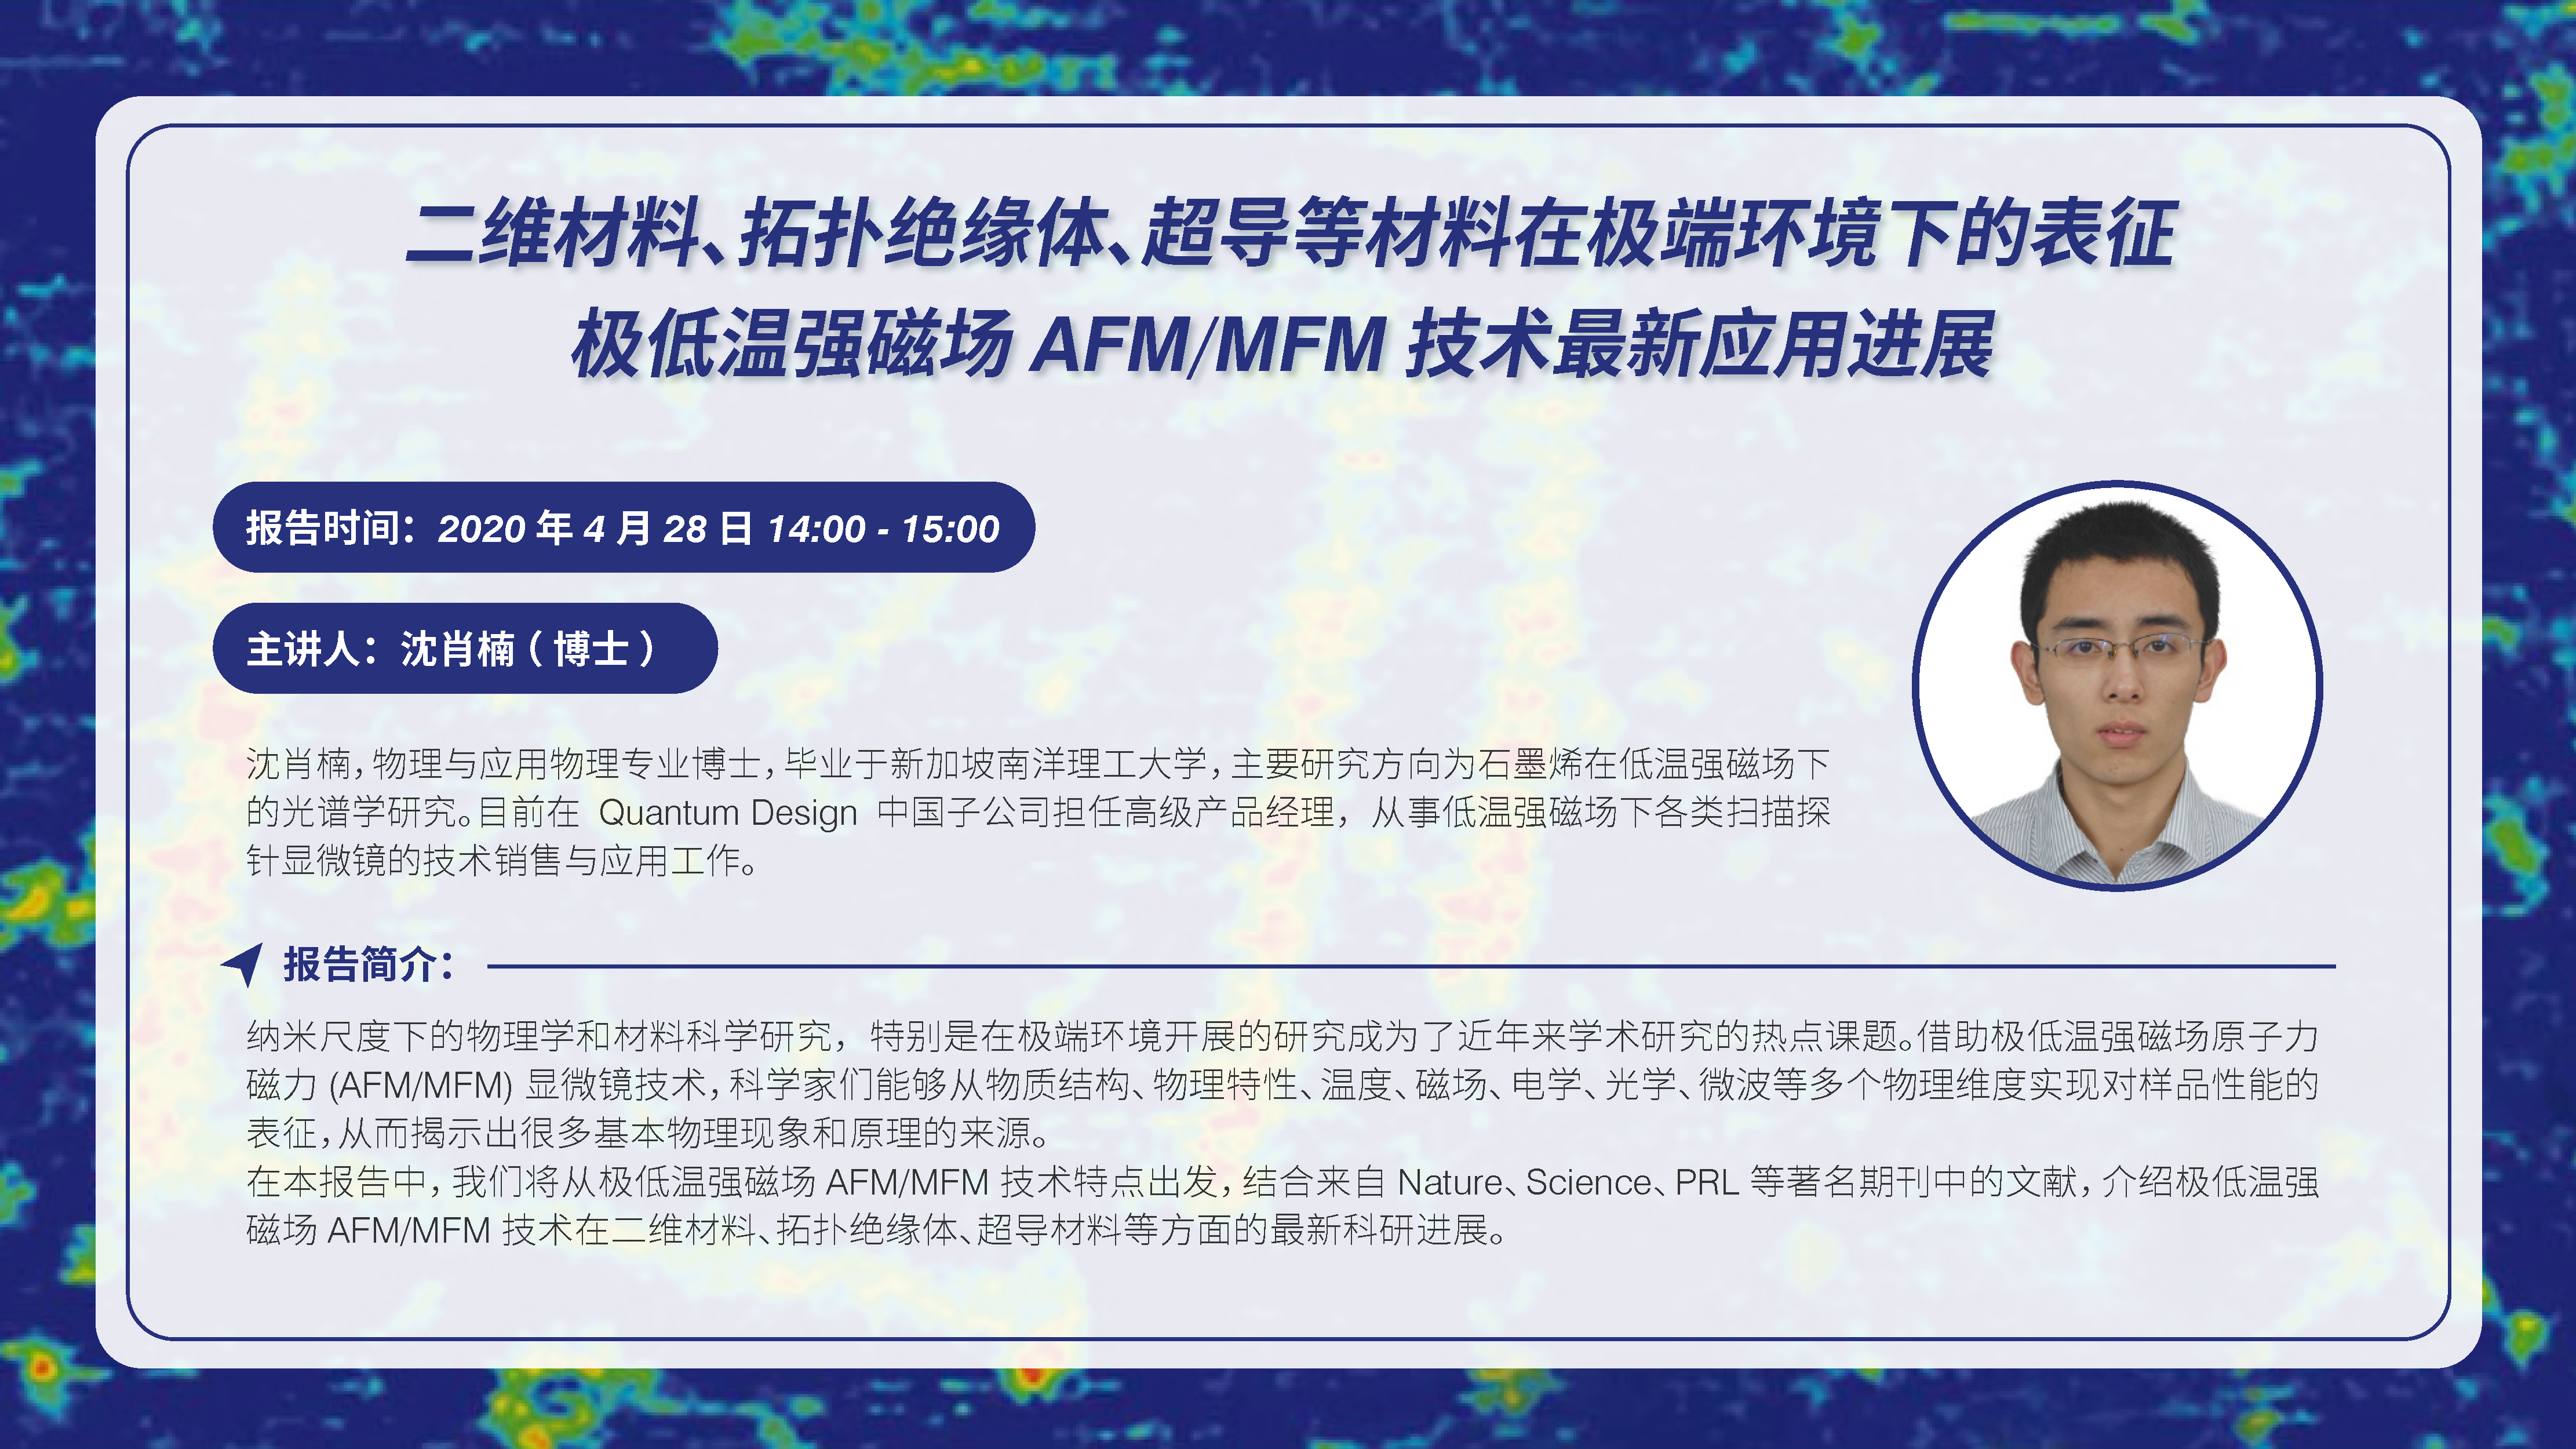 极低温强磁场AFM/MFM技术最新应用进展